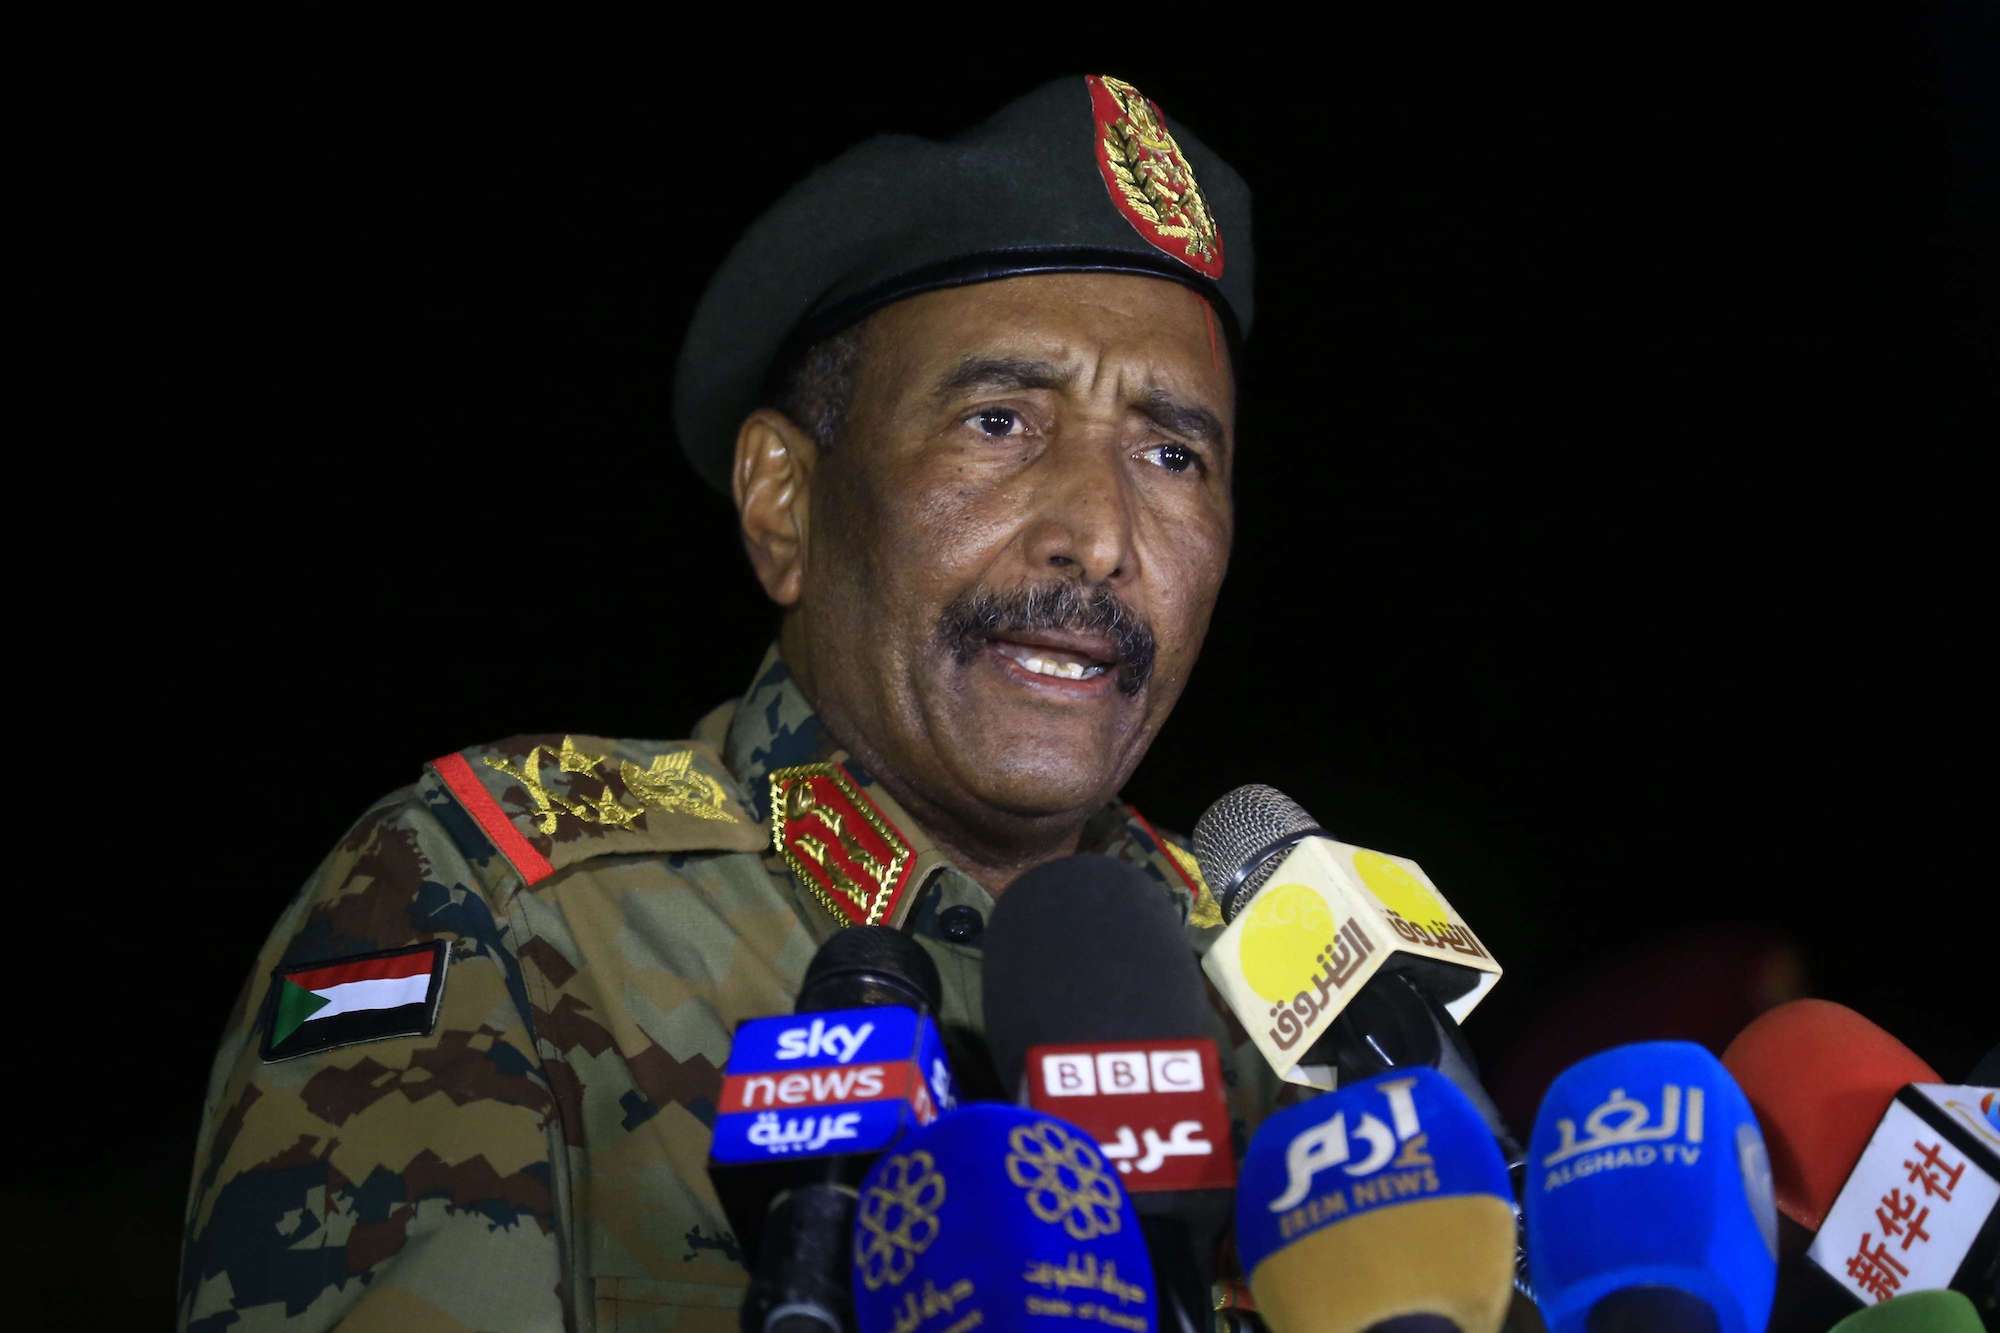 ستراتفور: تحديات خطيرة أمام السودان بعد محاولة الانقلاب الفاشلة